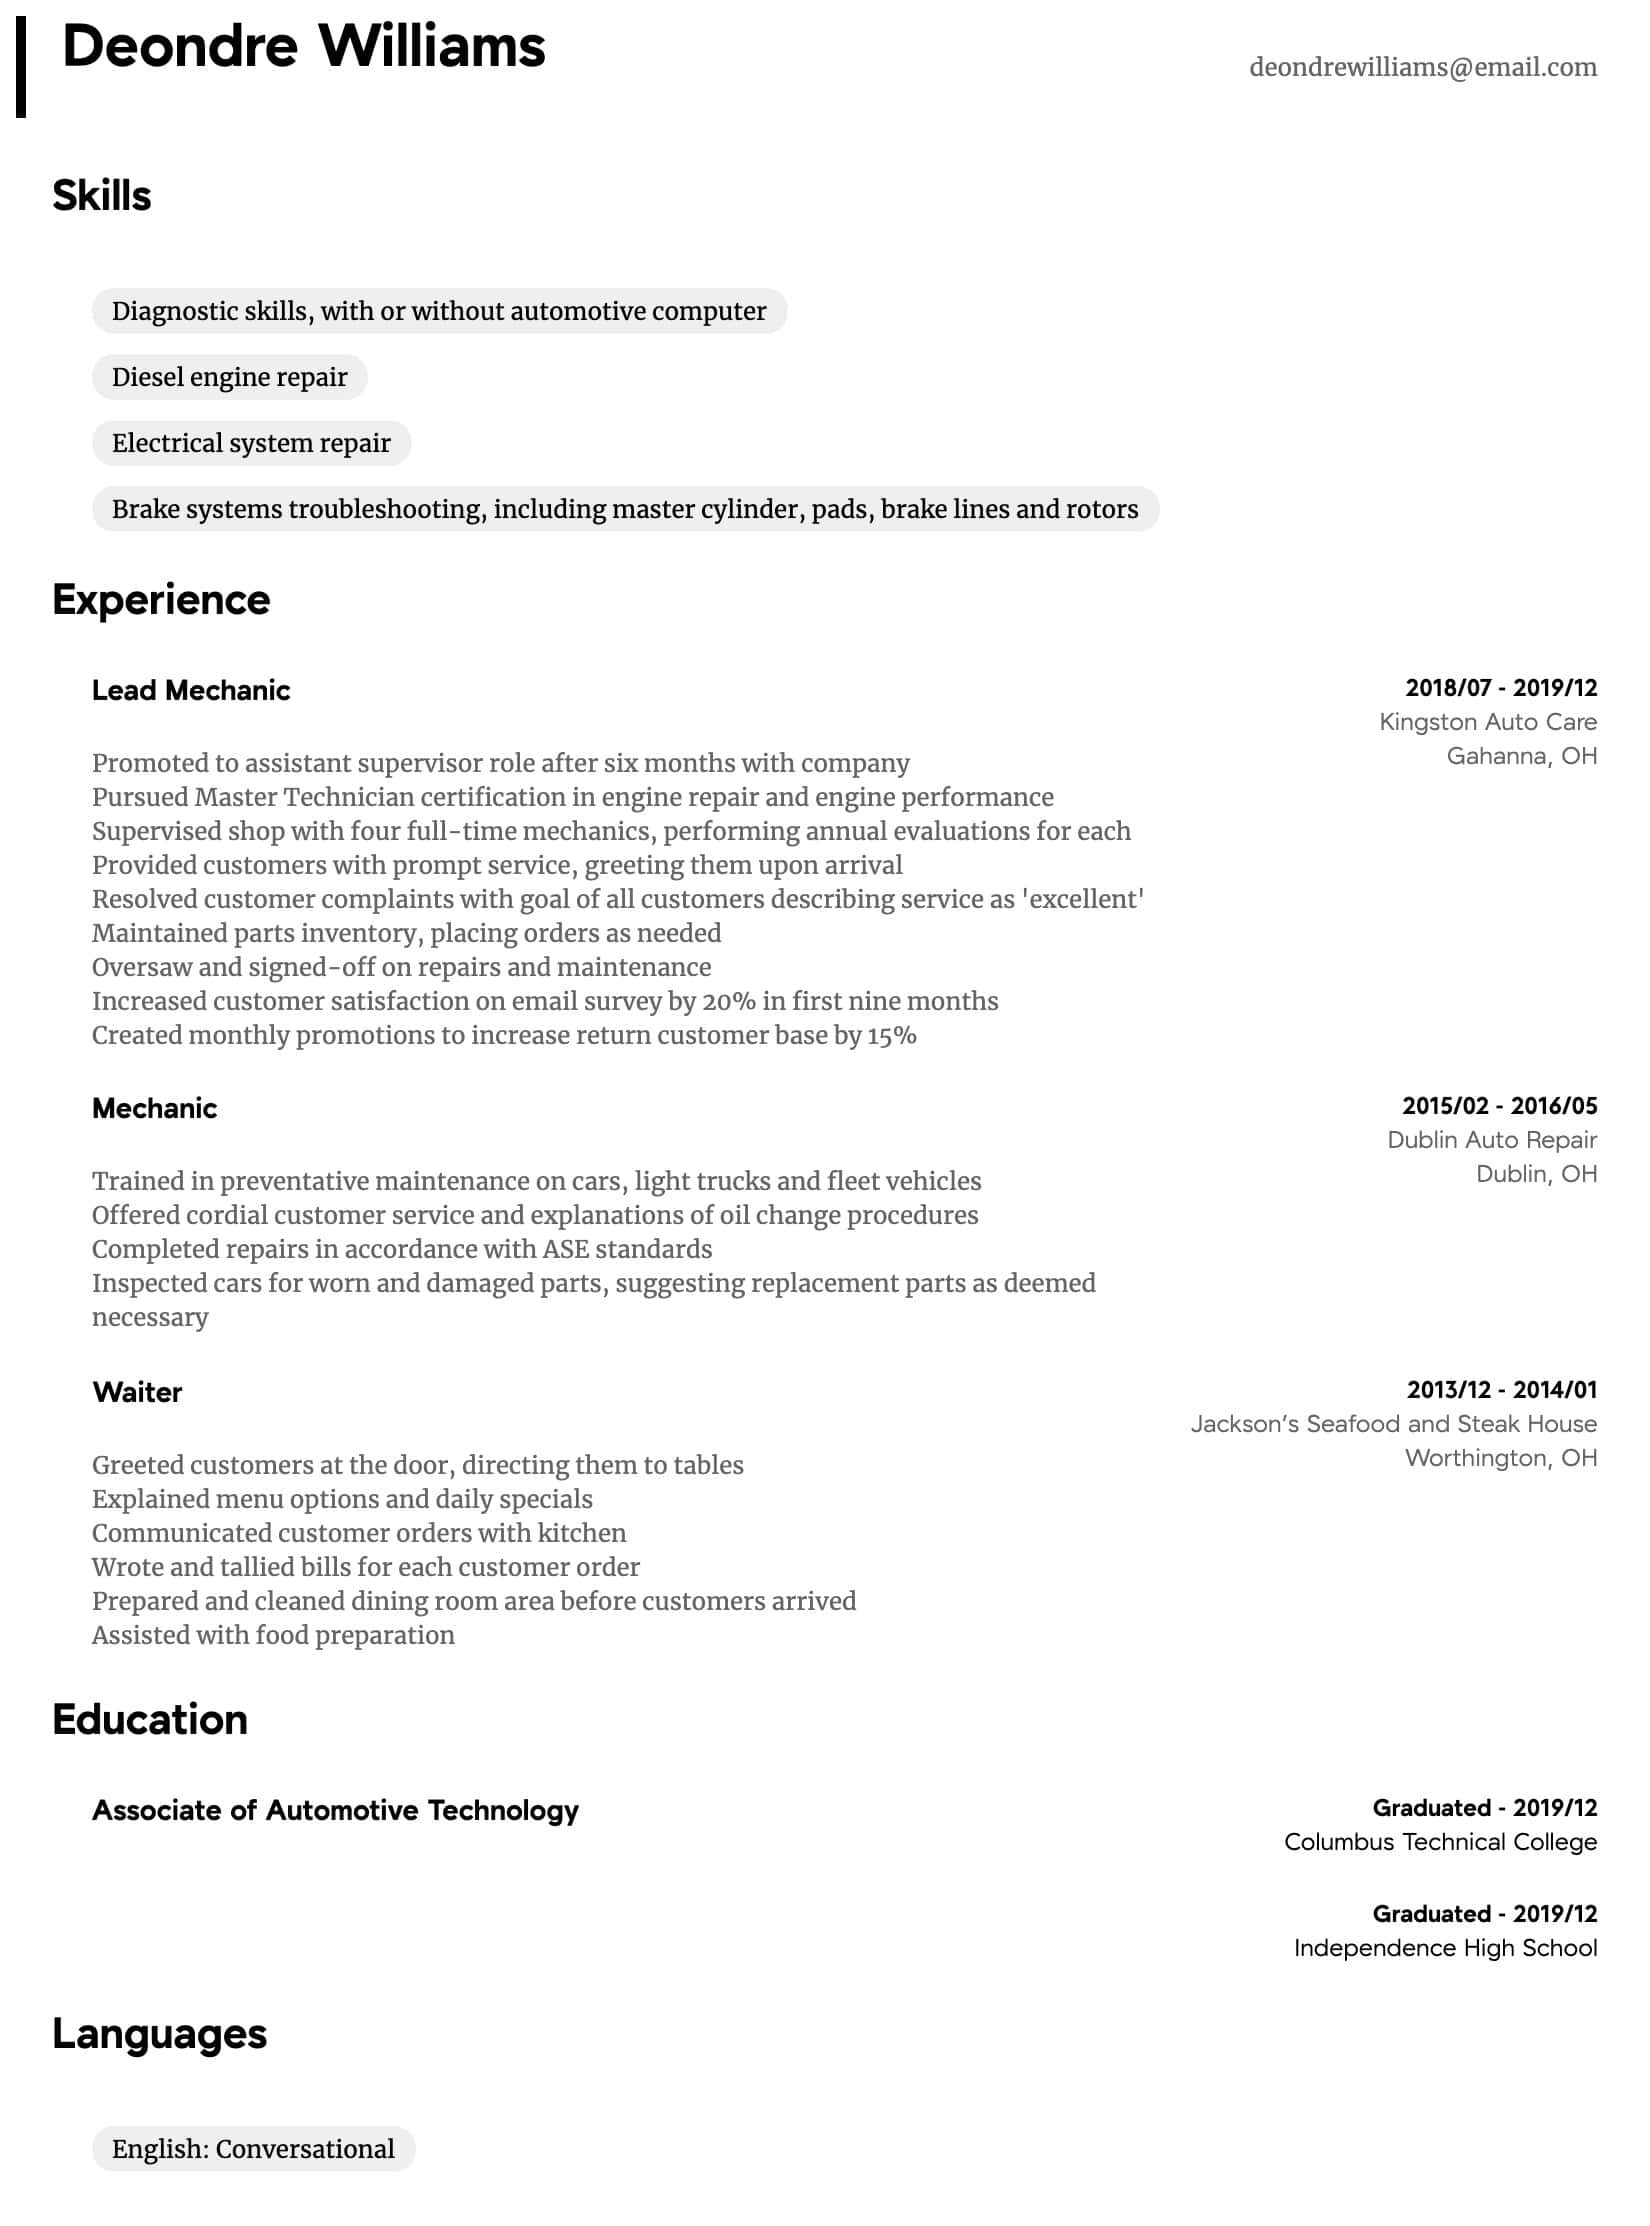 Sample Resume for Diesel Truck Mechanic Mechanic Resume Samples All Experience Levels Resume.com …